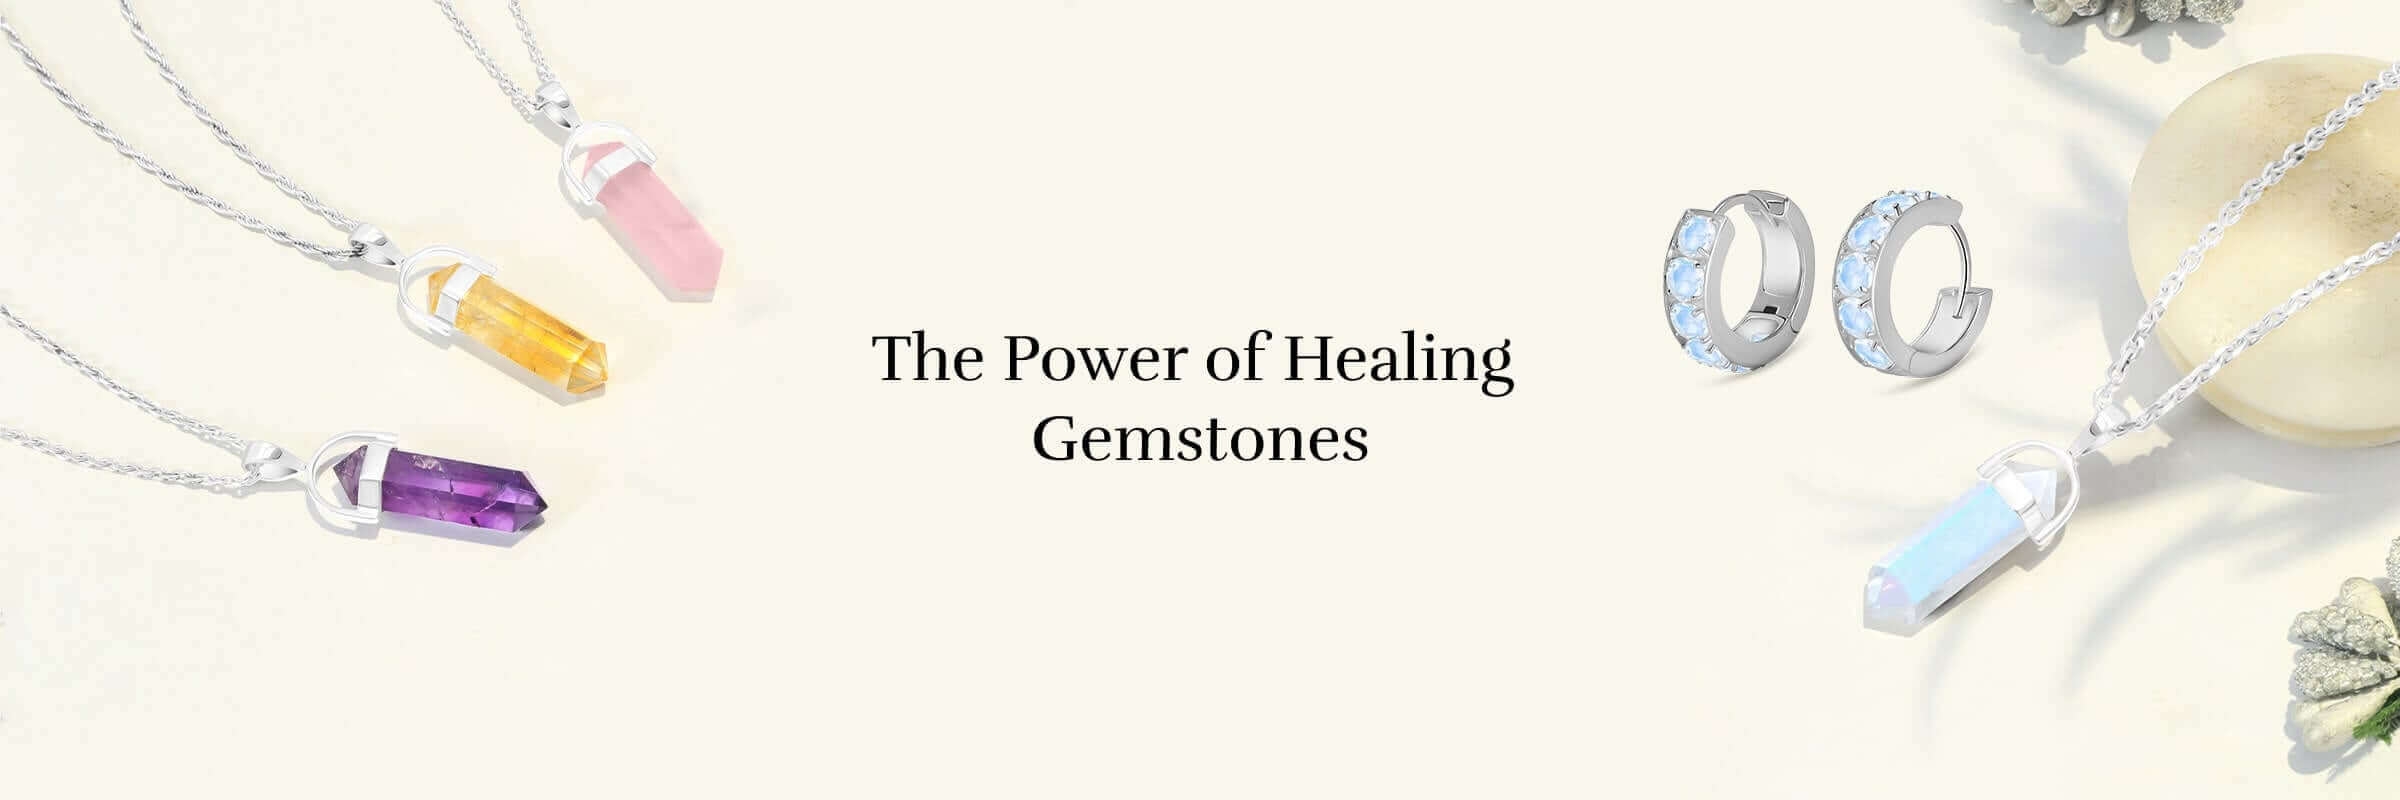 Healing properties Of Gemstones